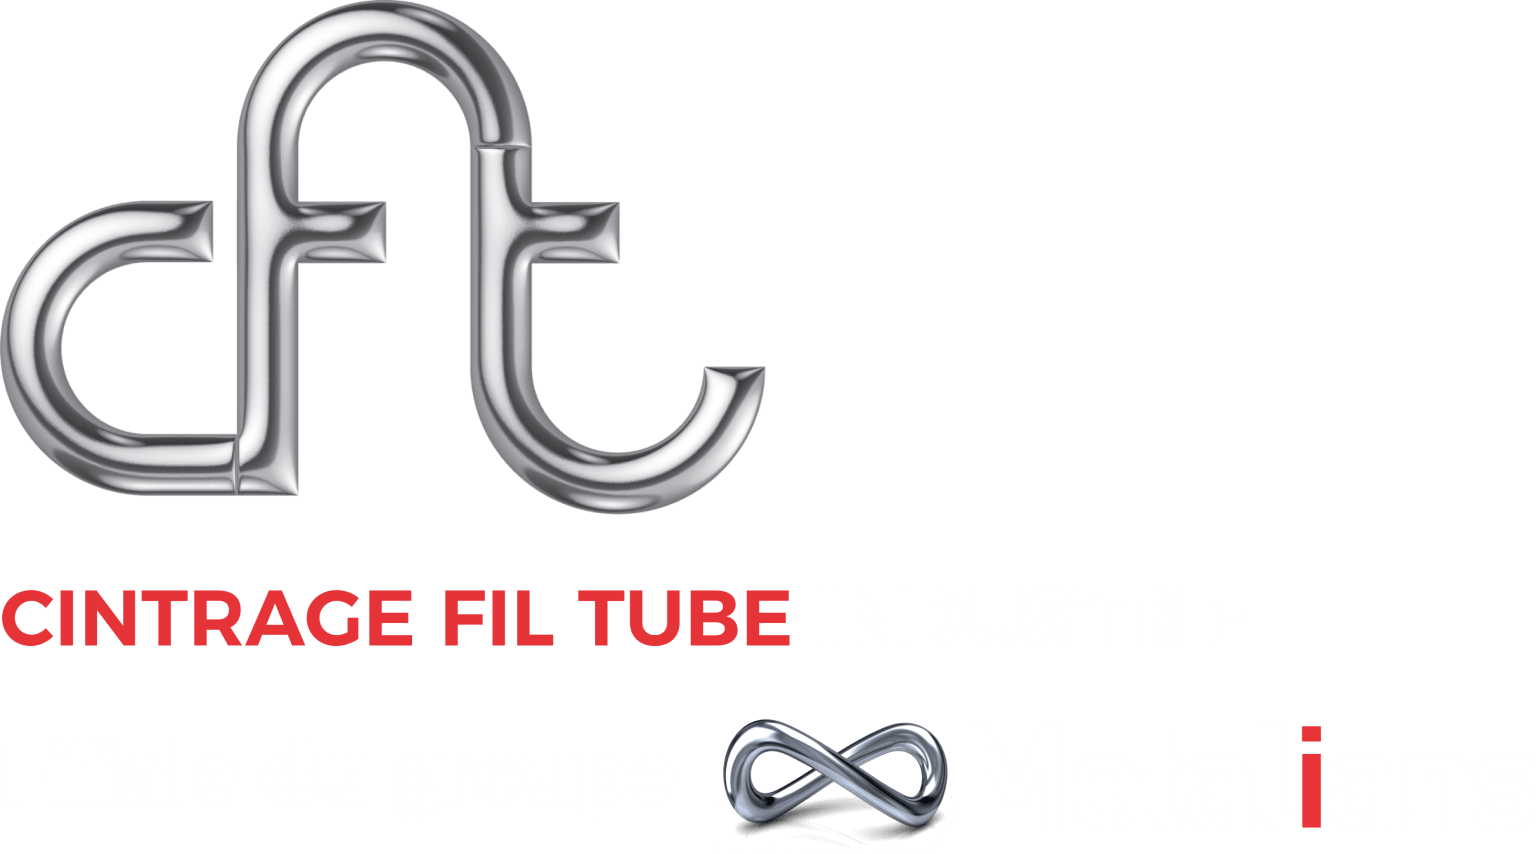 CFT Industrie : Cintrage, fil, tube. Filiale du groupe Metalians